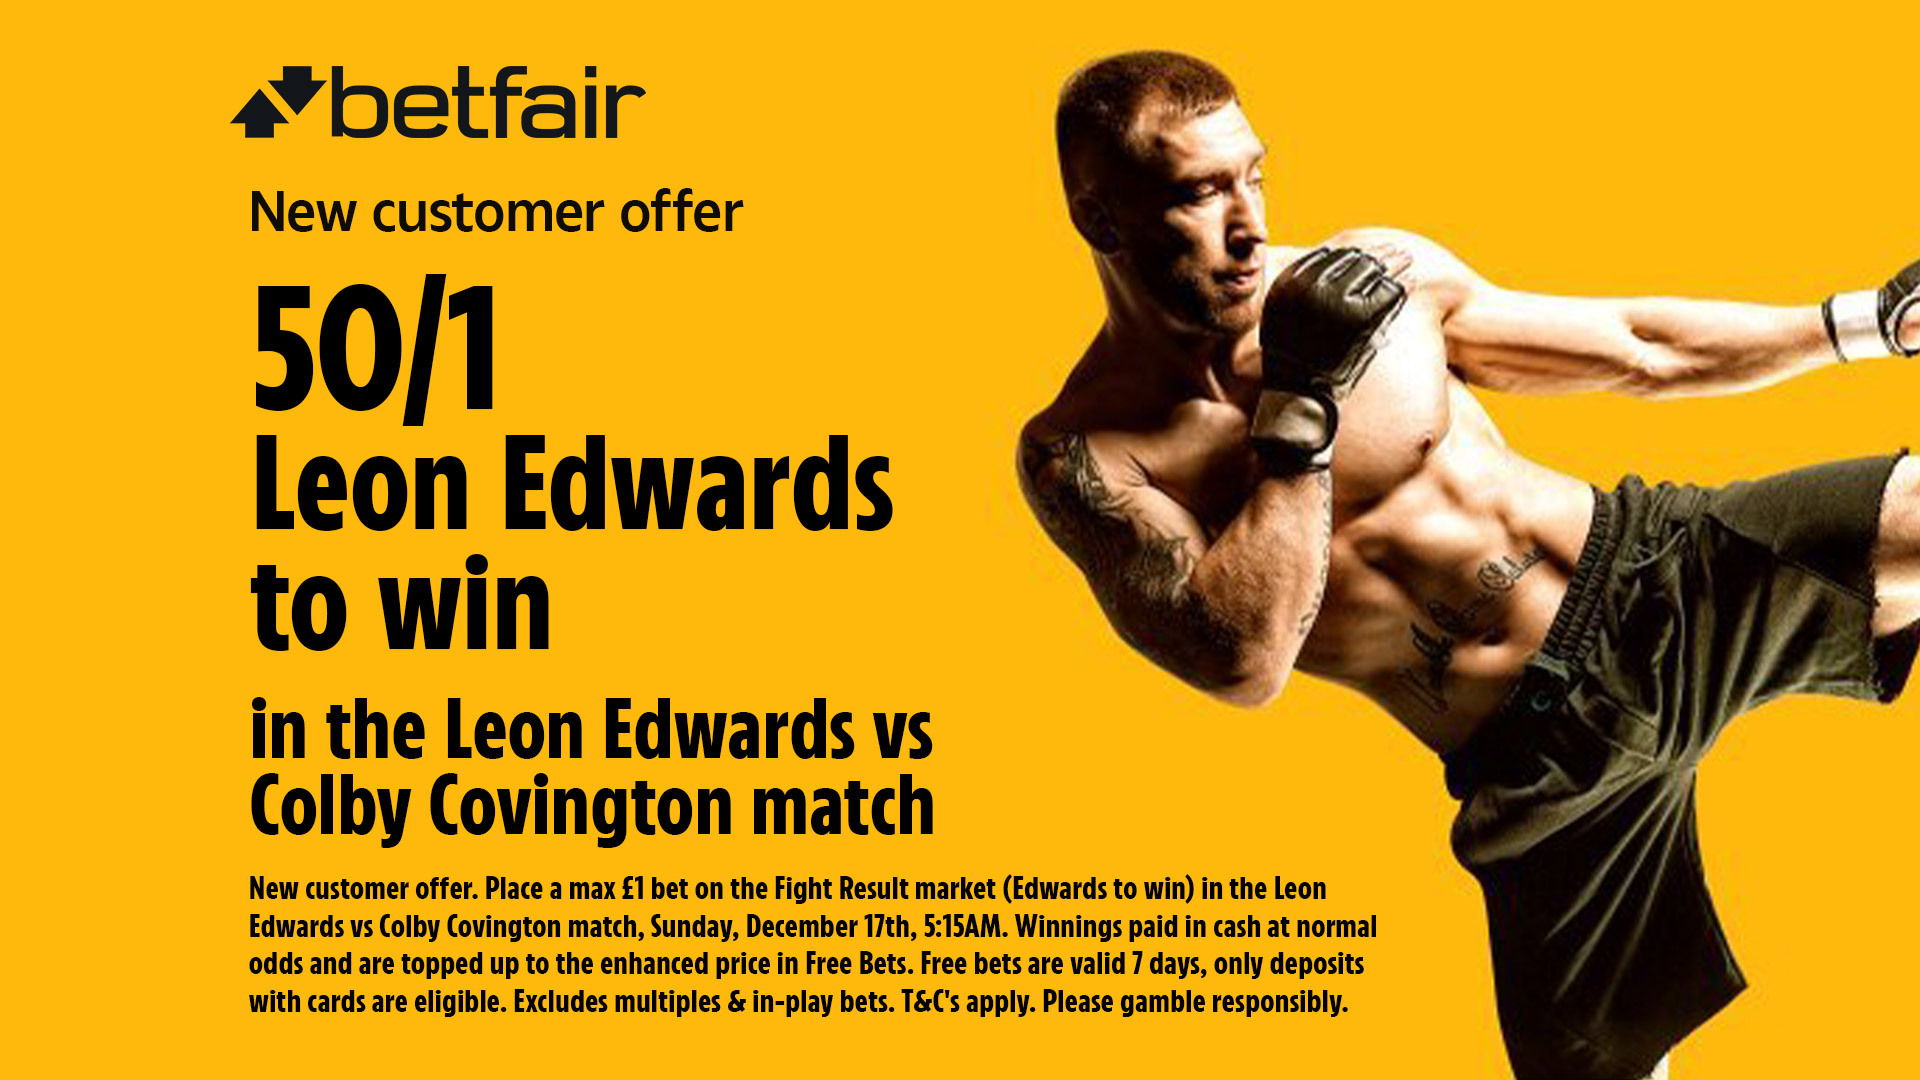 Photo: colby covington vs edwards odds